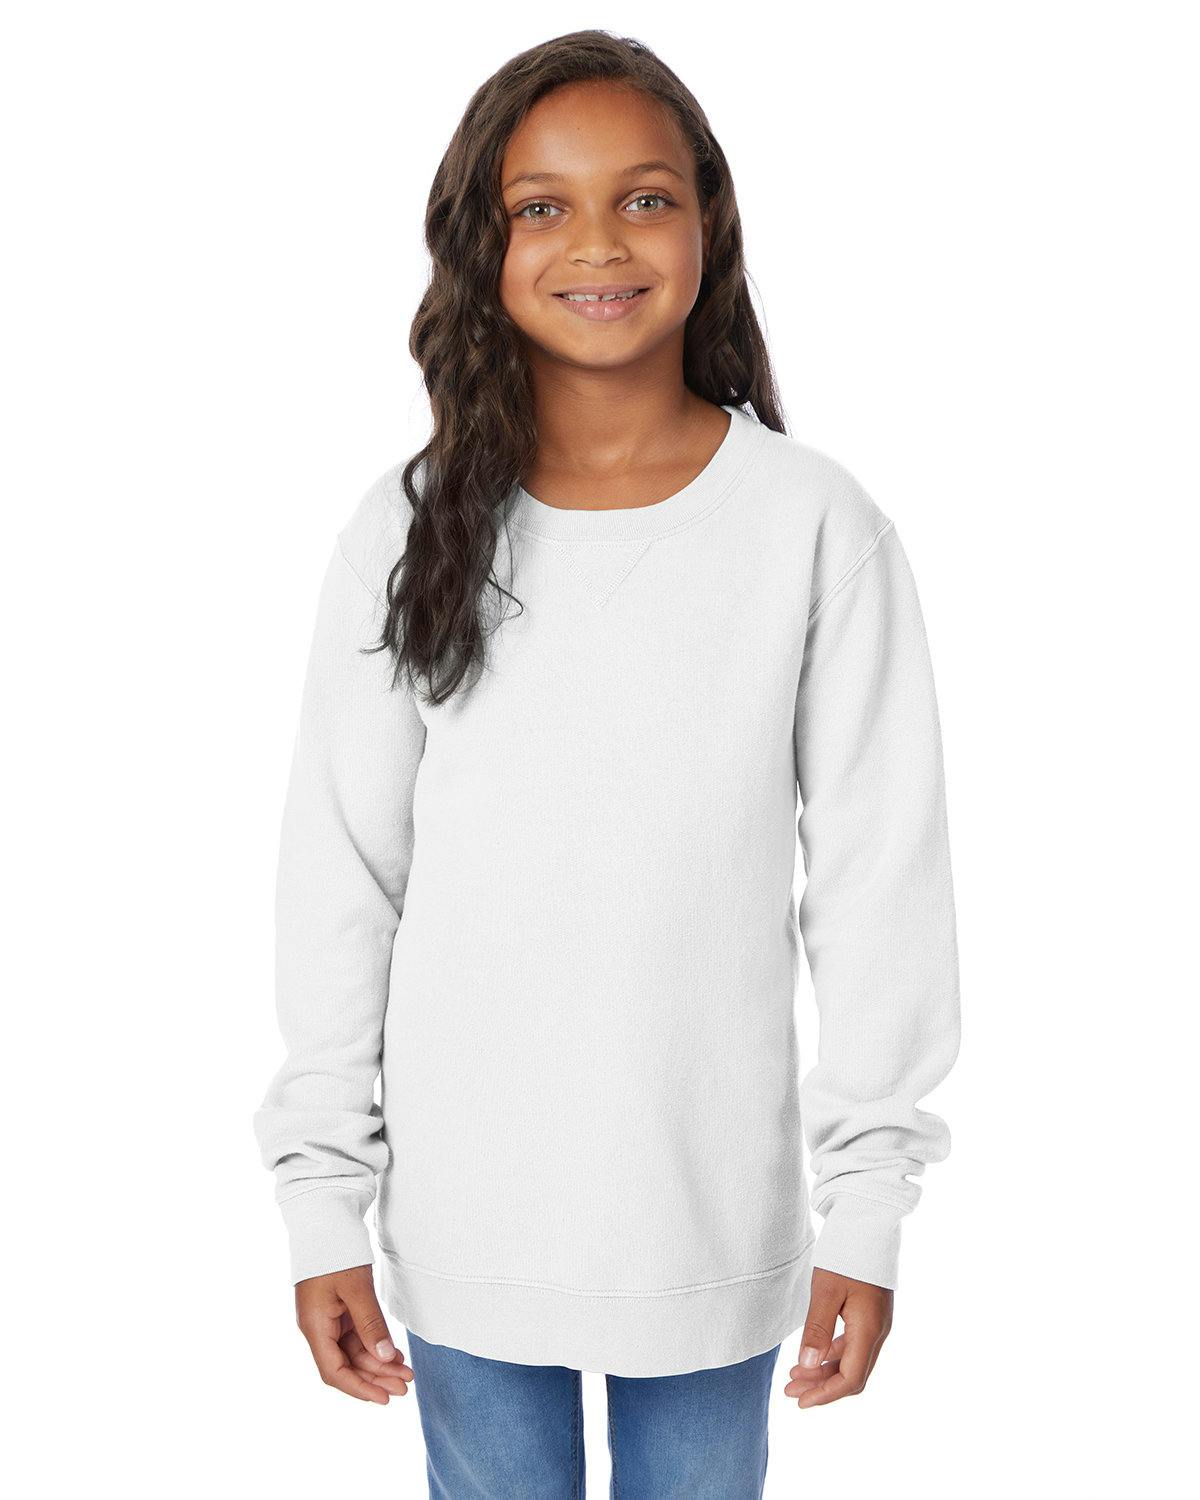 Image for Youth Fleece Sweatshirt